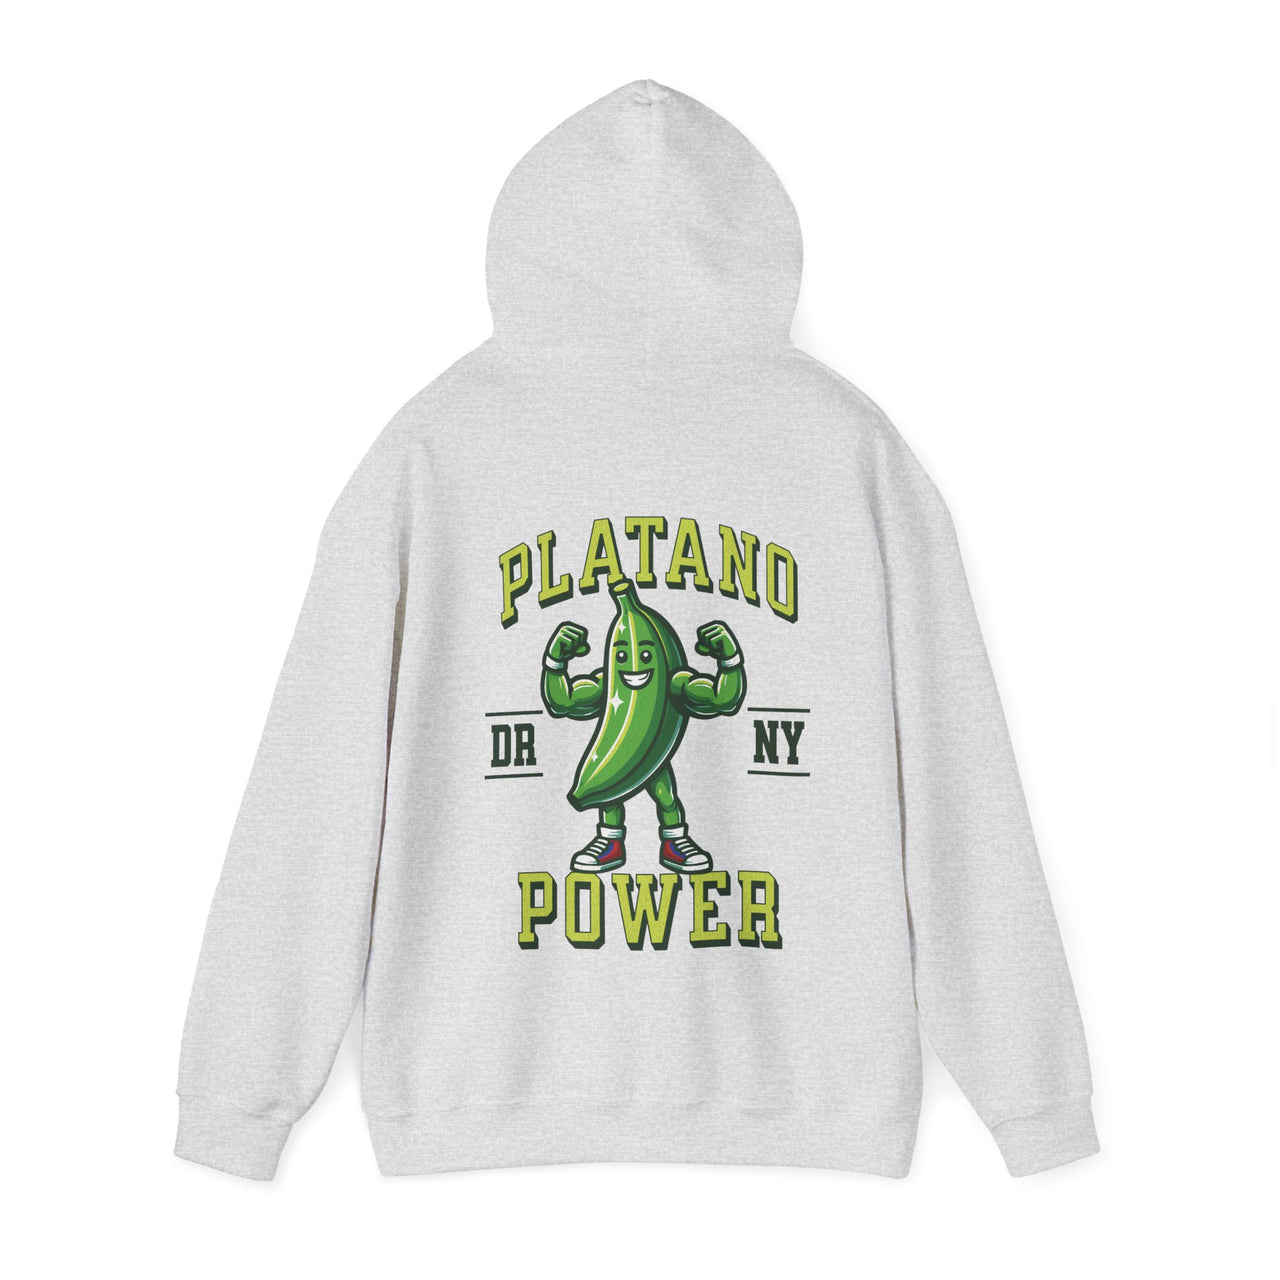 Platano Power Oversized Hoodie